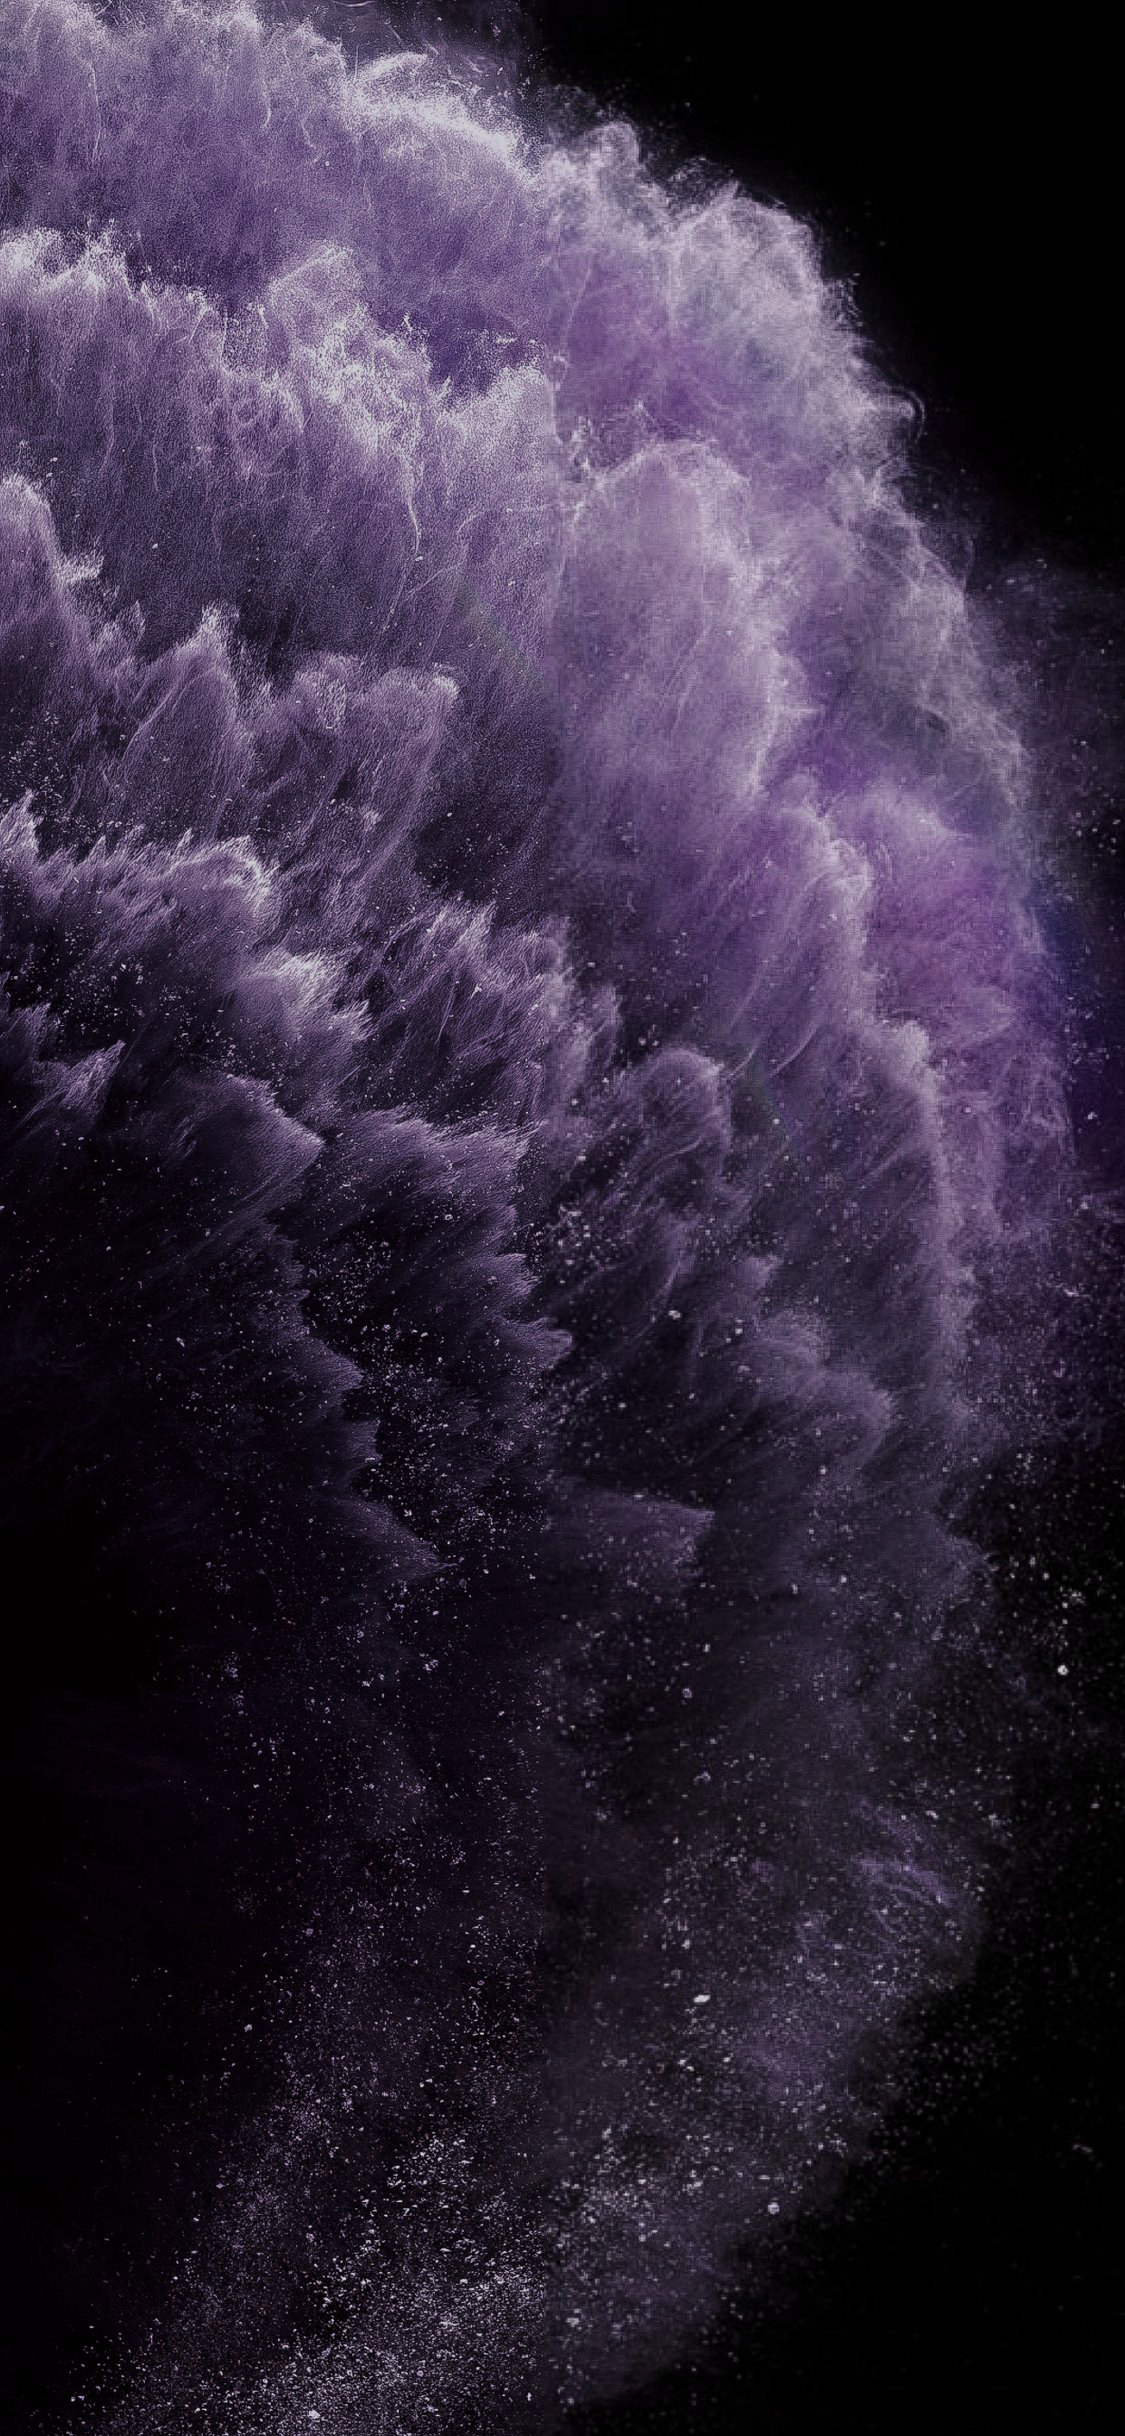 tema wallpaper,violett,lila,himmel,atmosphäre,wolke